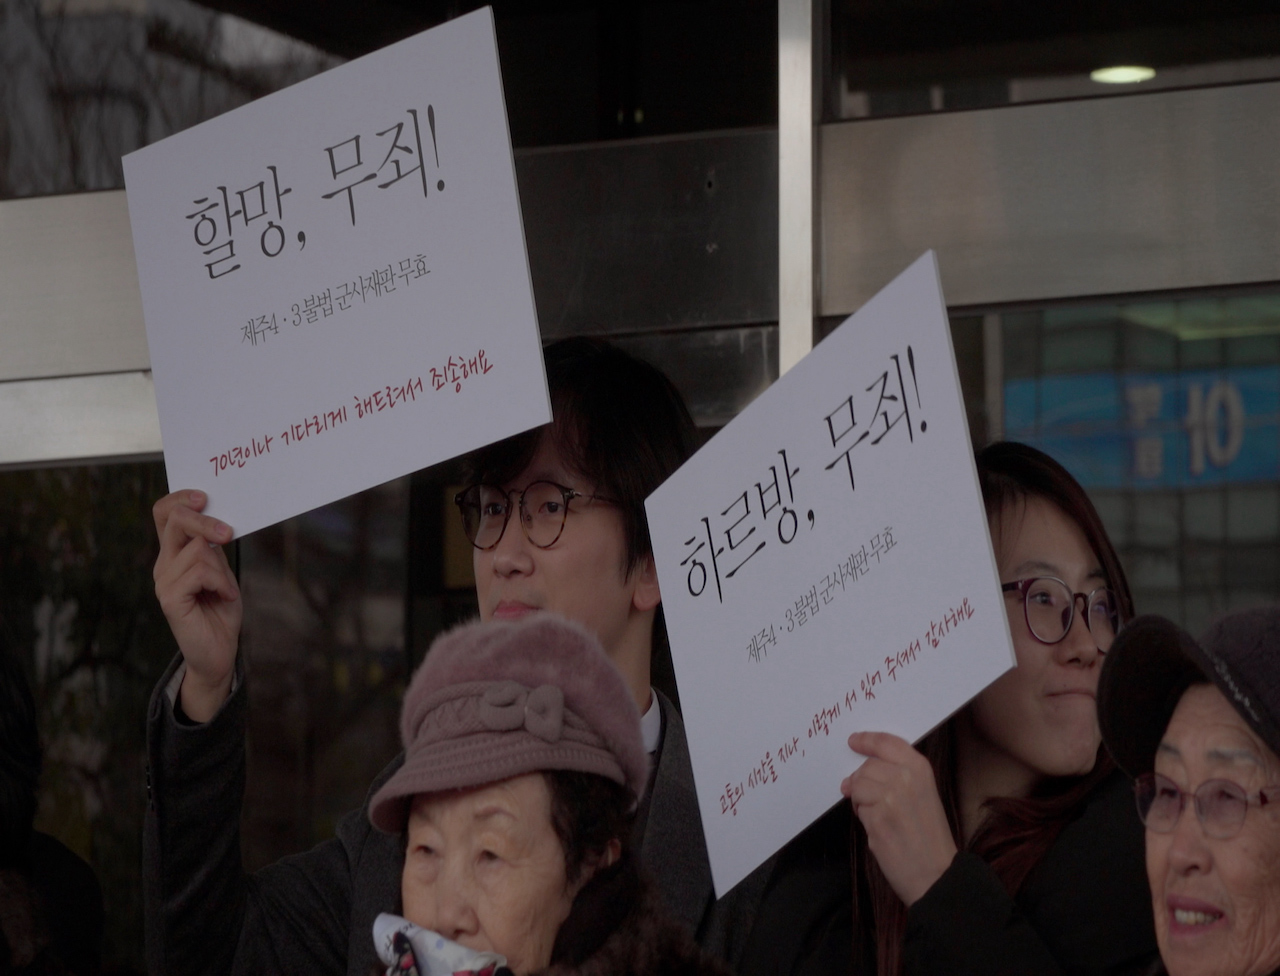 映画・ドラマに映る韓国女性のリアル (15) 済州４・３事件と女性たち ドキュメンタリー「石が語るまで」